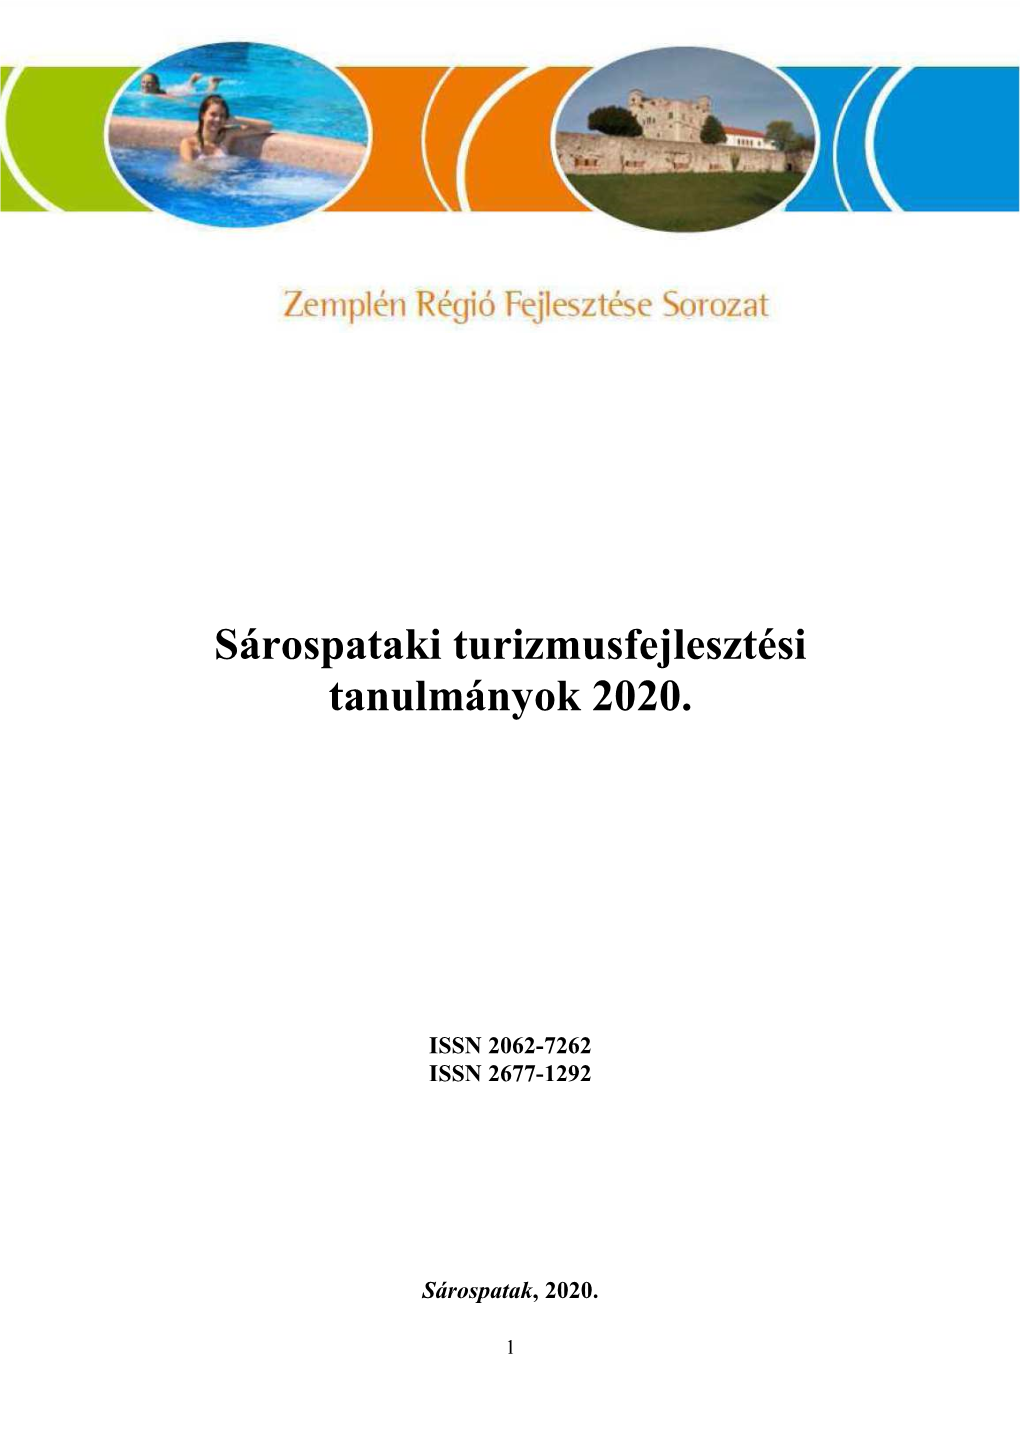 Sárospataki Turizmusfejlesztési Tanulmányok 2020